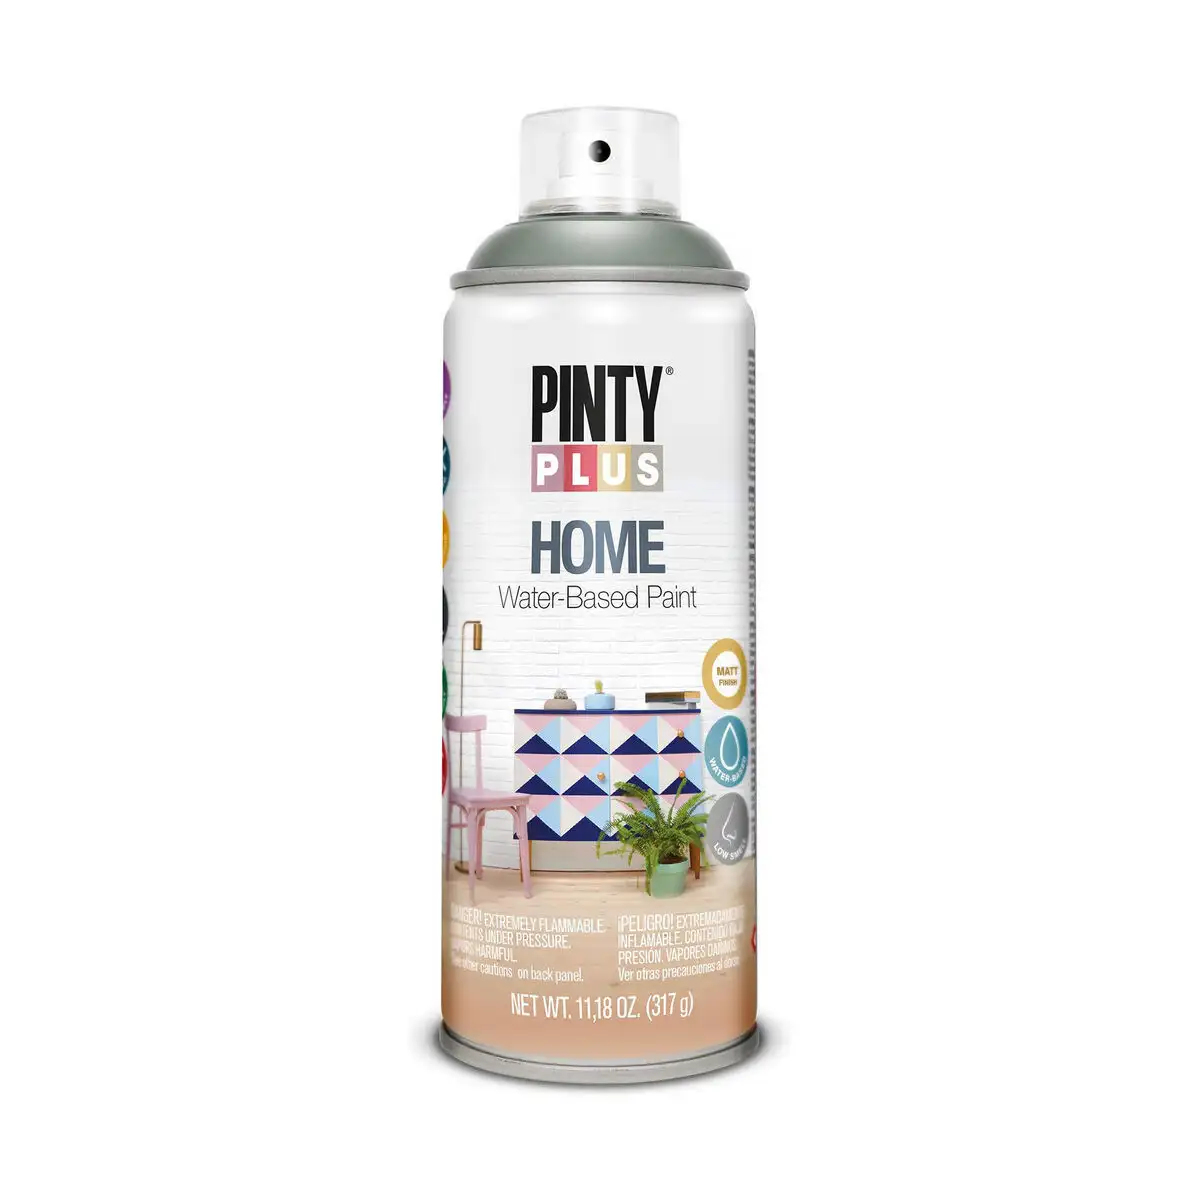 Peinture en spray pintyplus home hm416 400 ml green wood_2127. Bienvenue sur DIAYTAR SENEGAL - Où le Shopping est une Affaire Personnelle. Découvrez notre sélection et choisissez des produits qui reflètent votre unicité et votre individualité.